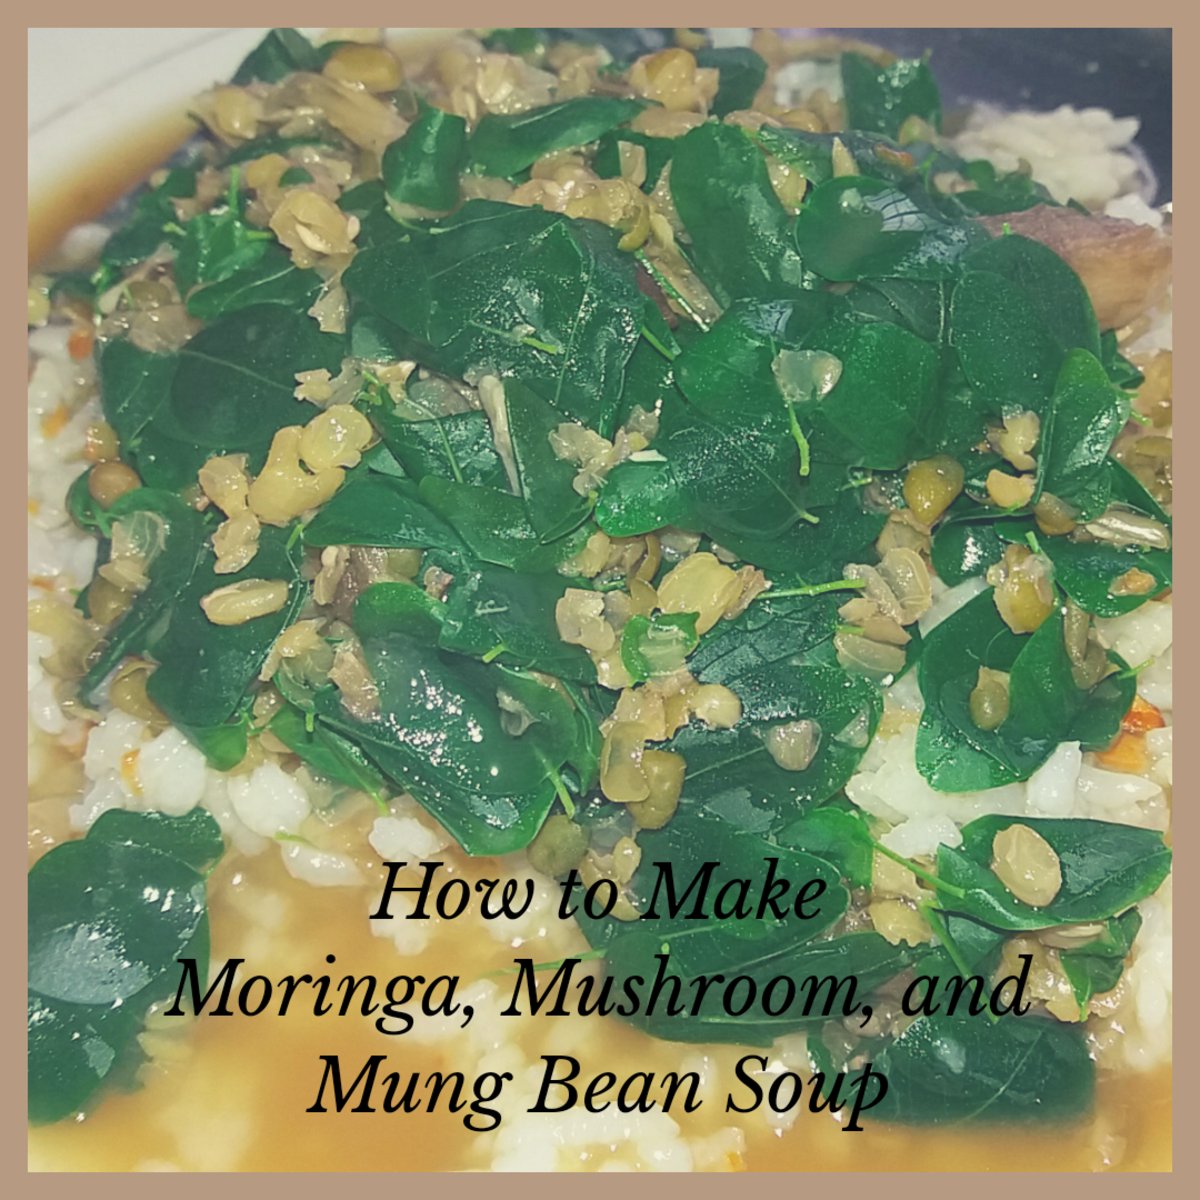 How to Make Moringa, Mushroom, and Mung Bean Soup